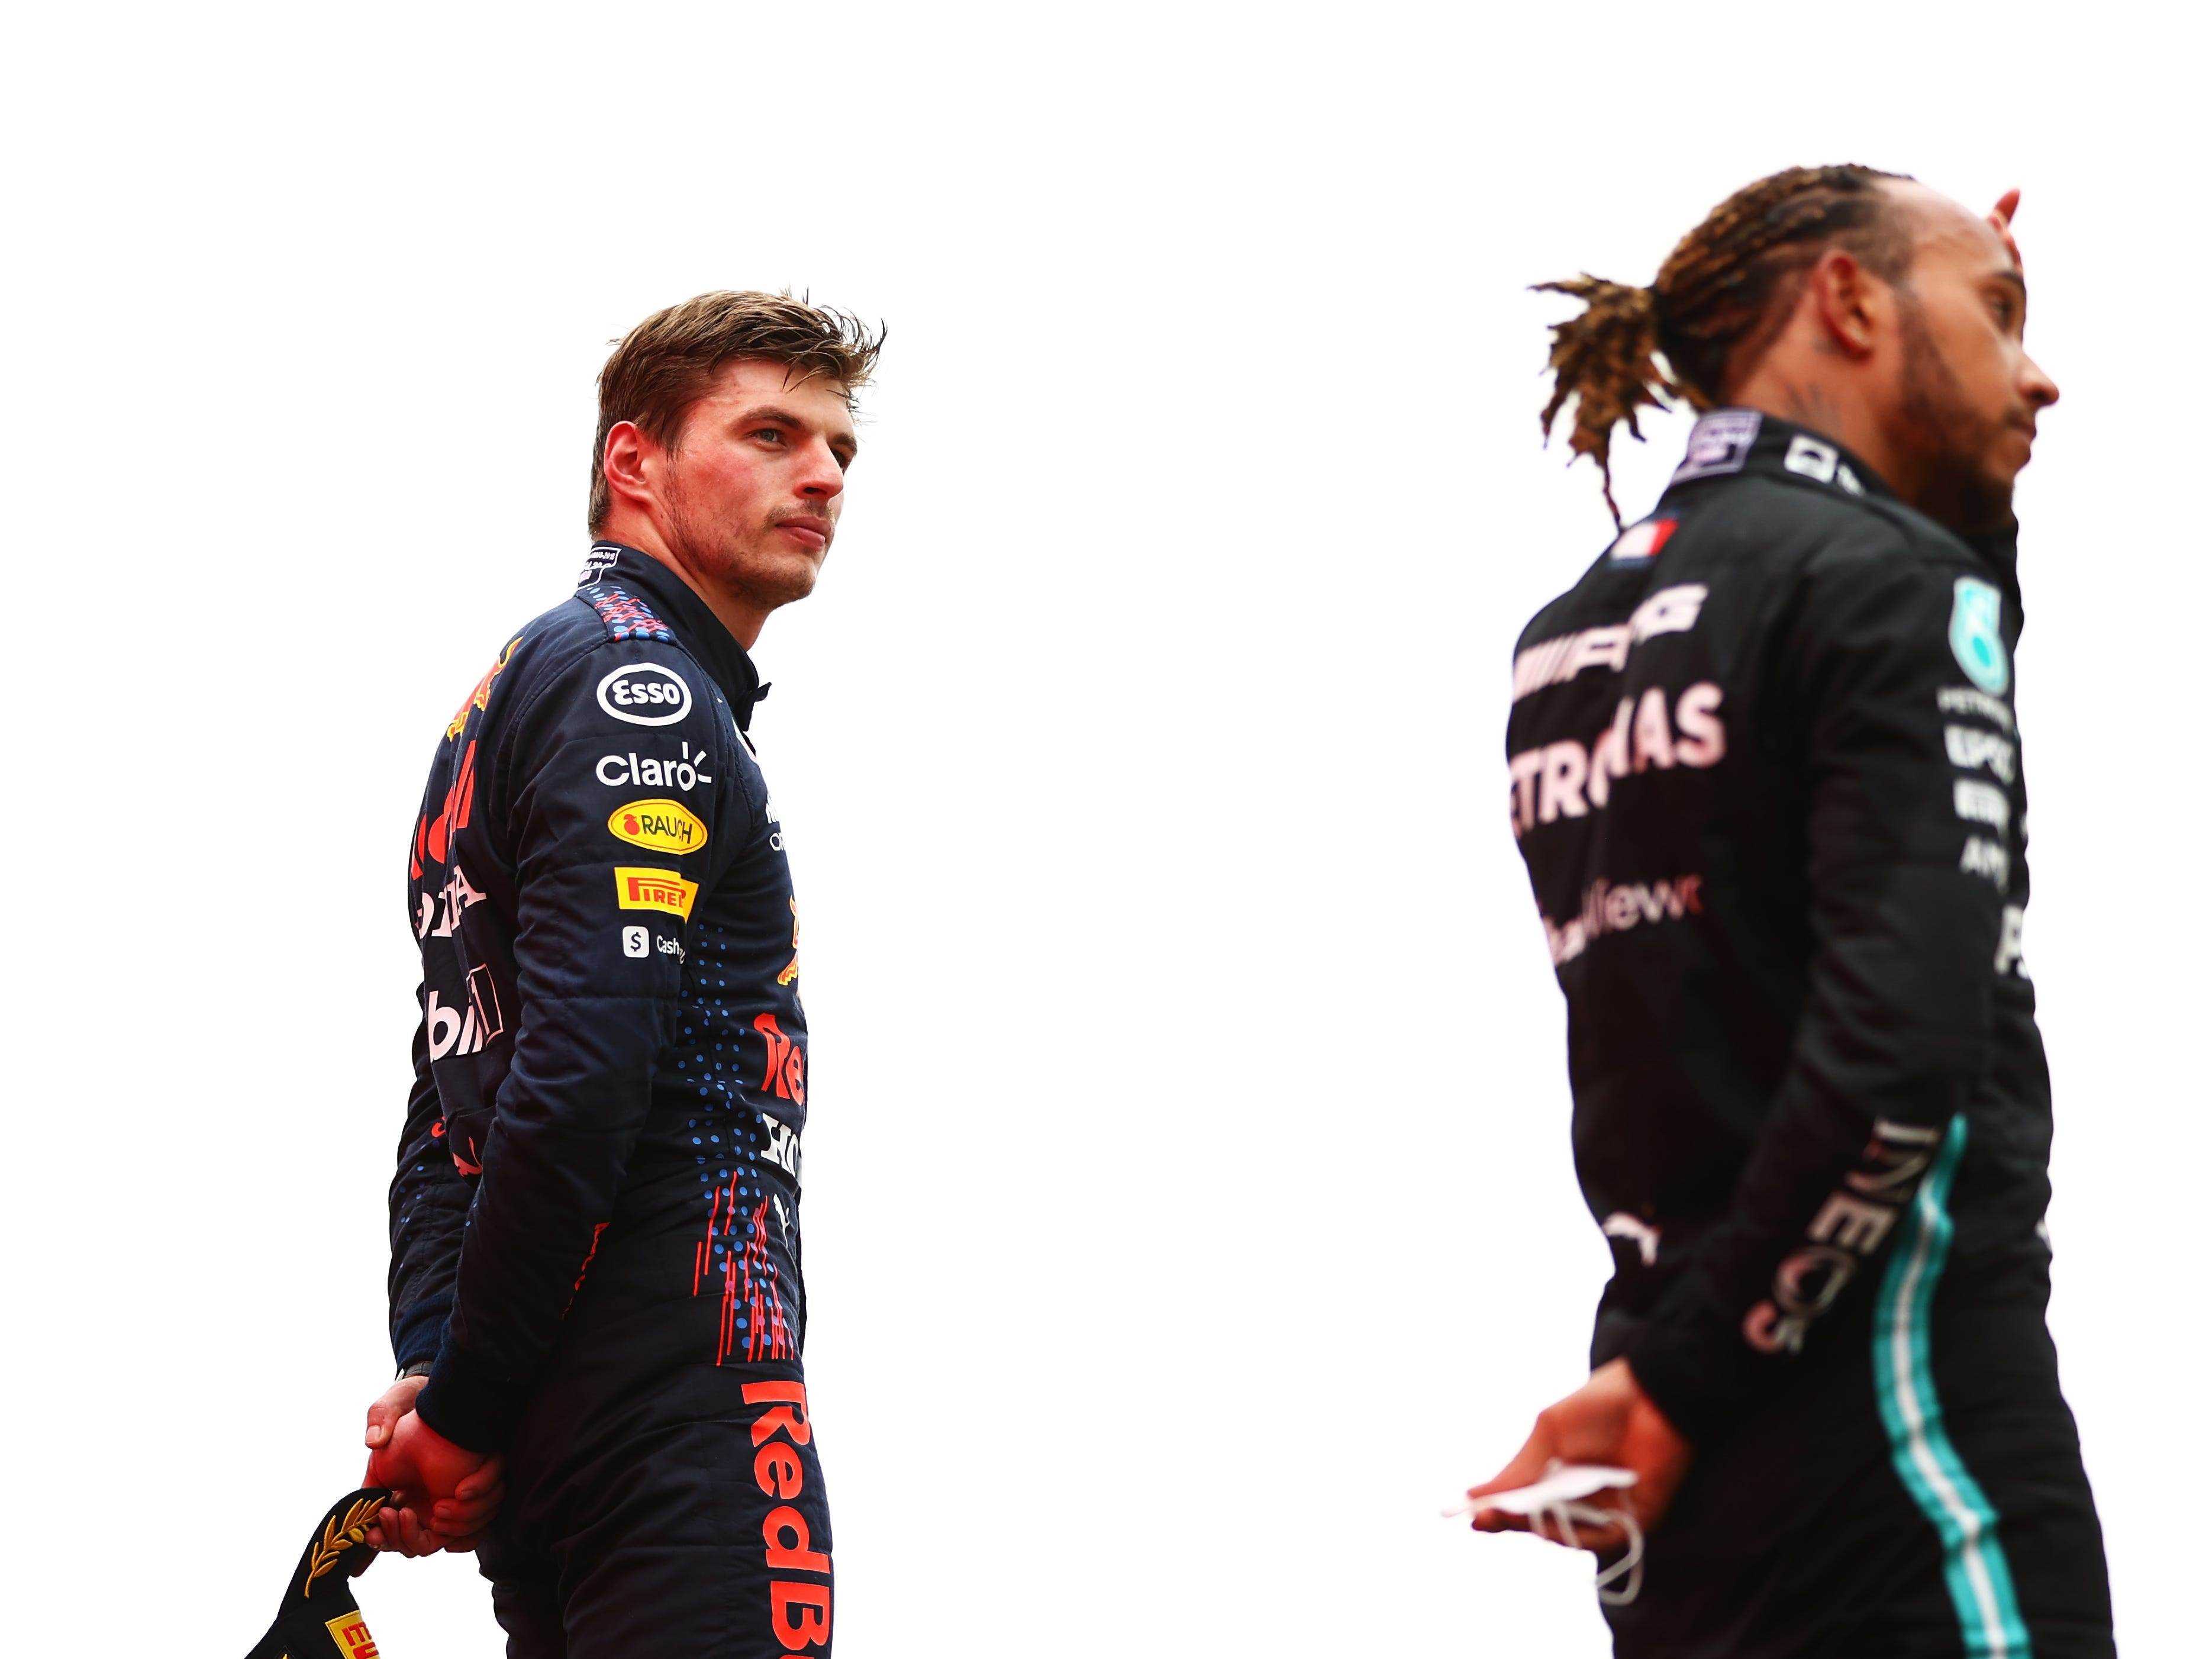 Max Verstappen betrachtet Lewis Hamilton vom Siegertreppchen aus.